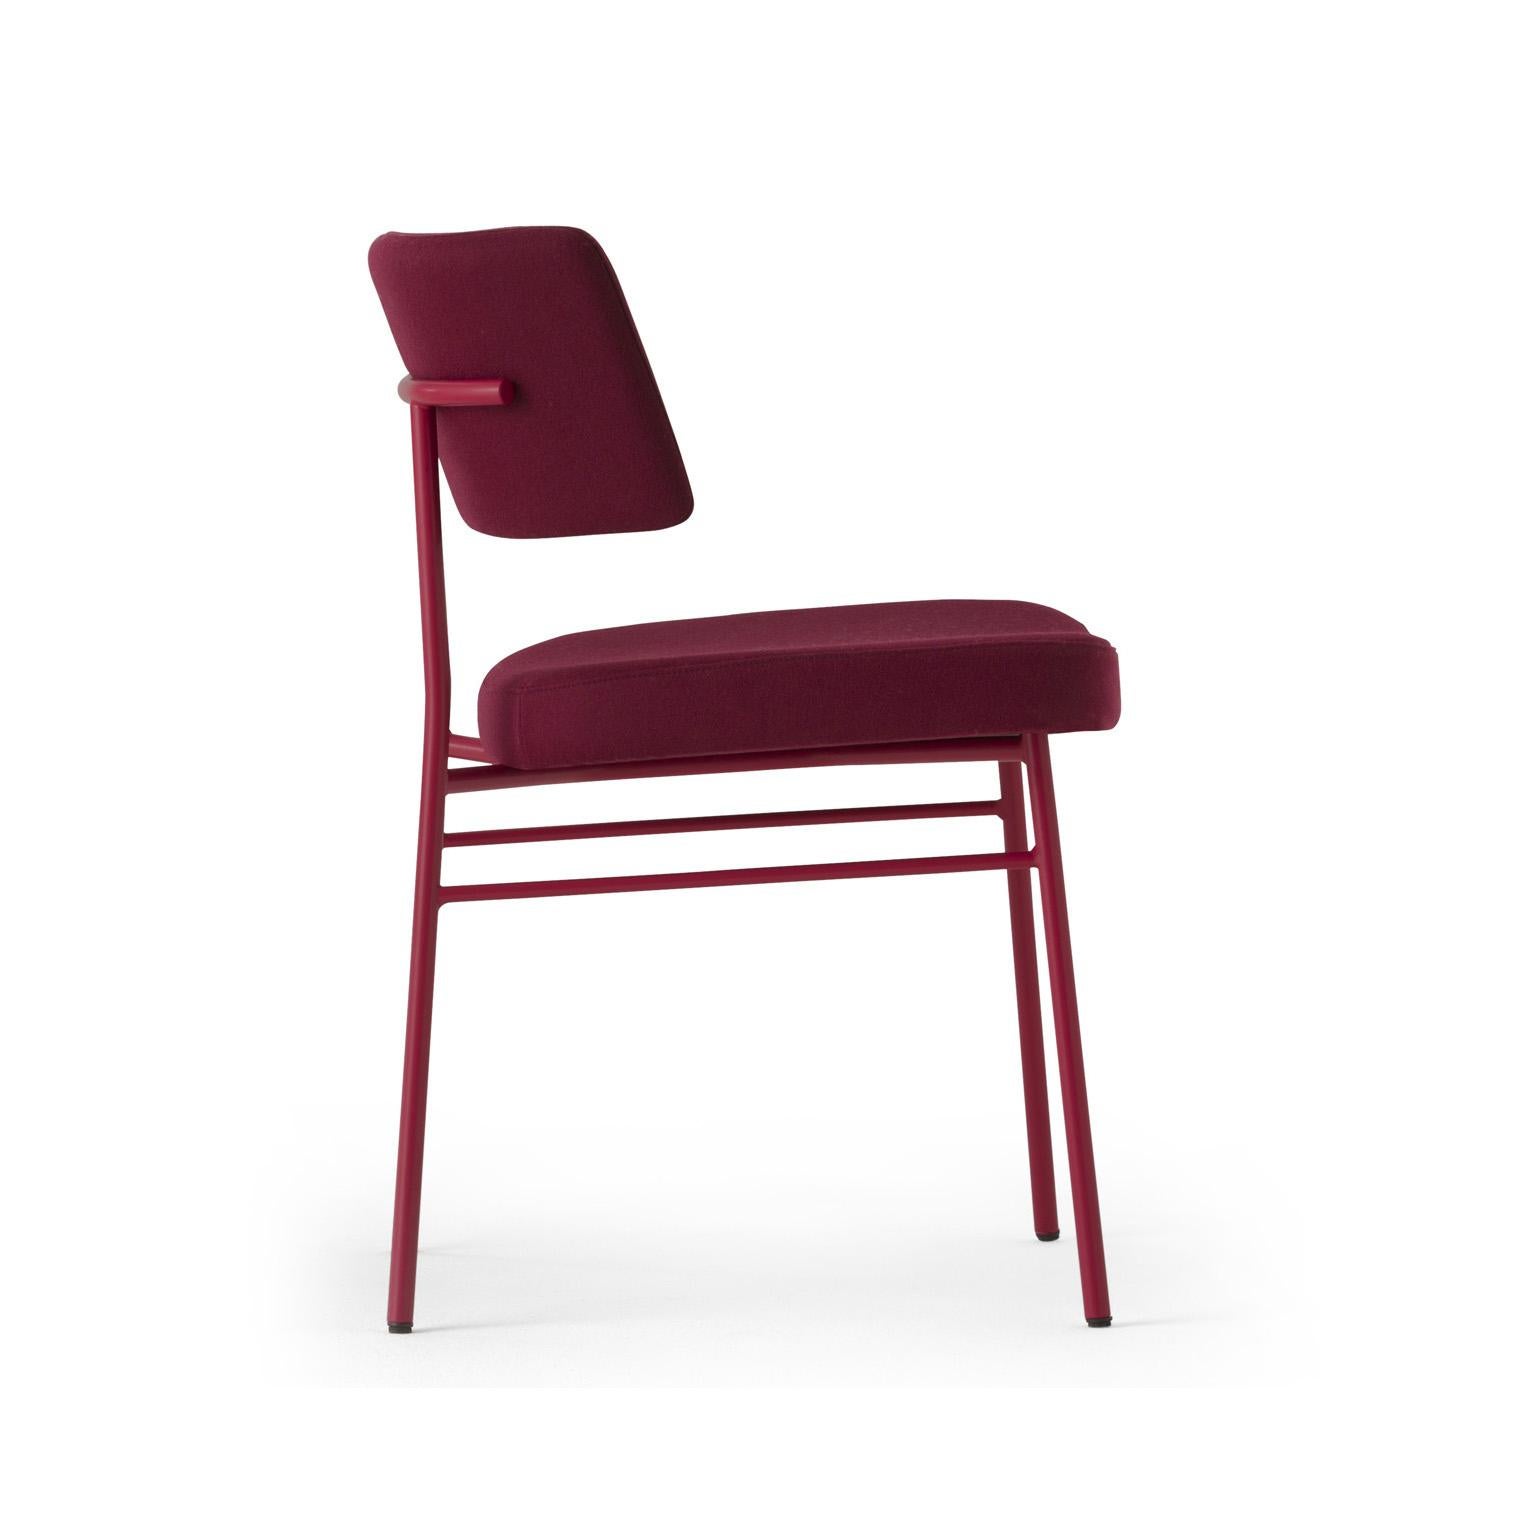 Le confort, une forme ergonomique et une structure robuste sont les caractéristiques du design Marlen, la nouvelle chaise Trabà conçue par EP Studio.
La courbure du dossier, généreusement rembourré comme l'assise, et la structure dynamique et